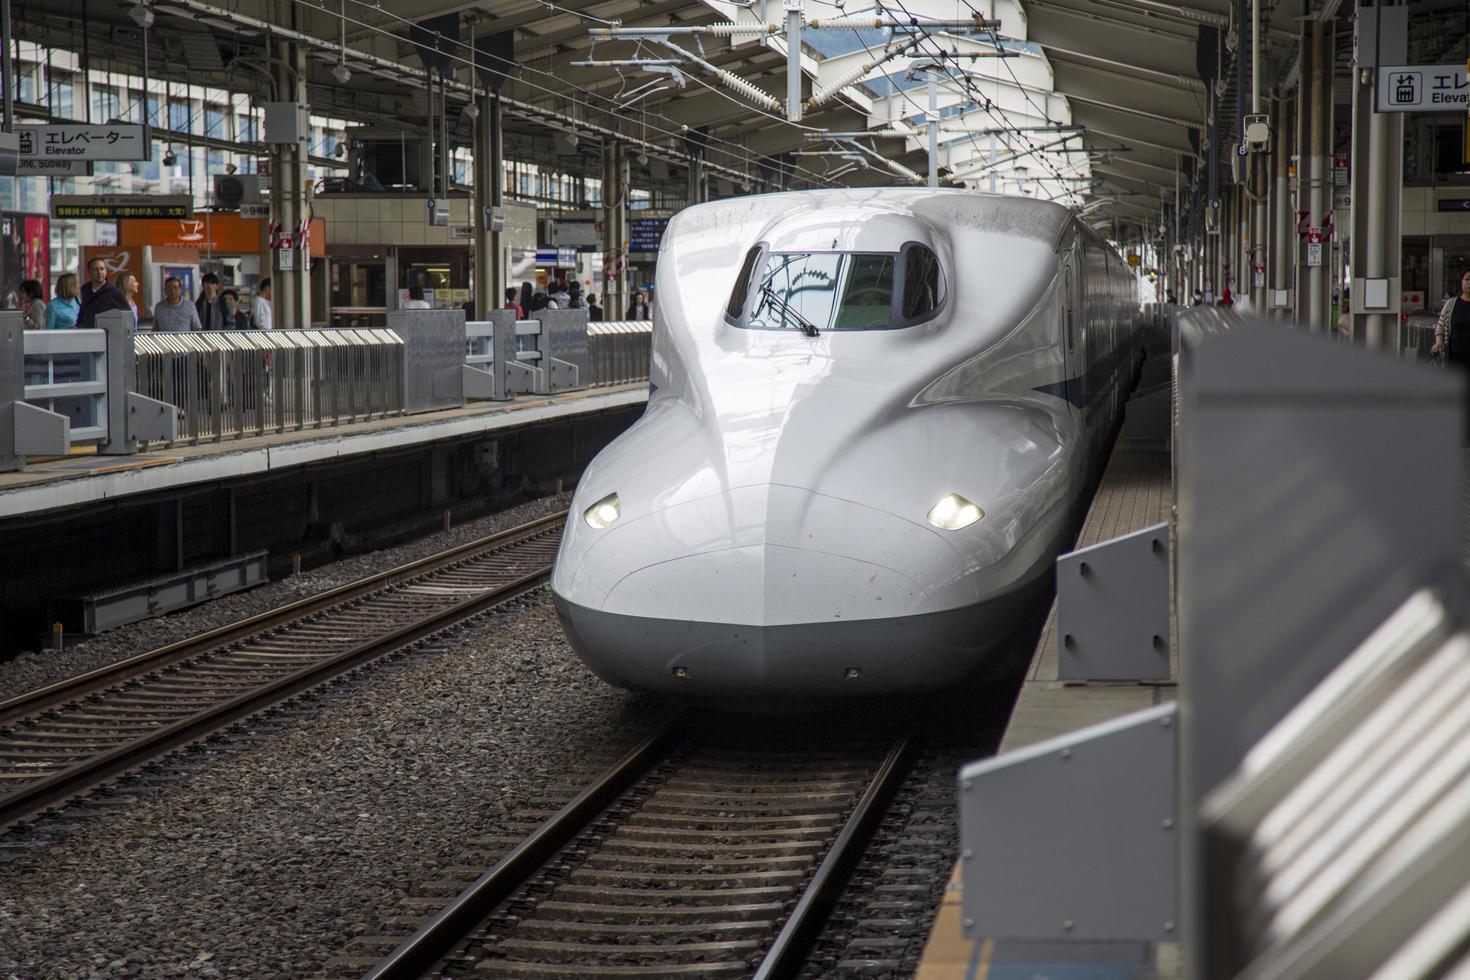 Kyoto, Japan, 2016 - Shinkansen N700 Speed Train am Bahnhof Kyoto in Japan. Züge der Serie n700 haben eine Höchstgeschwindigkeit von 300 km/h. foto